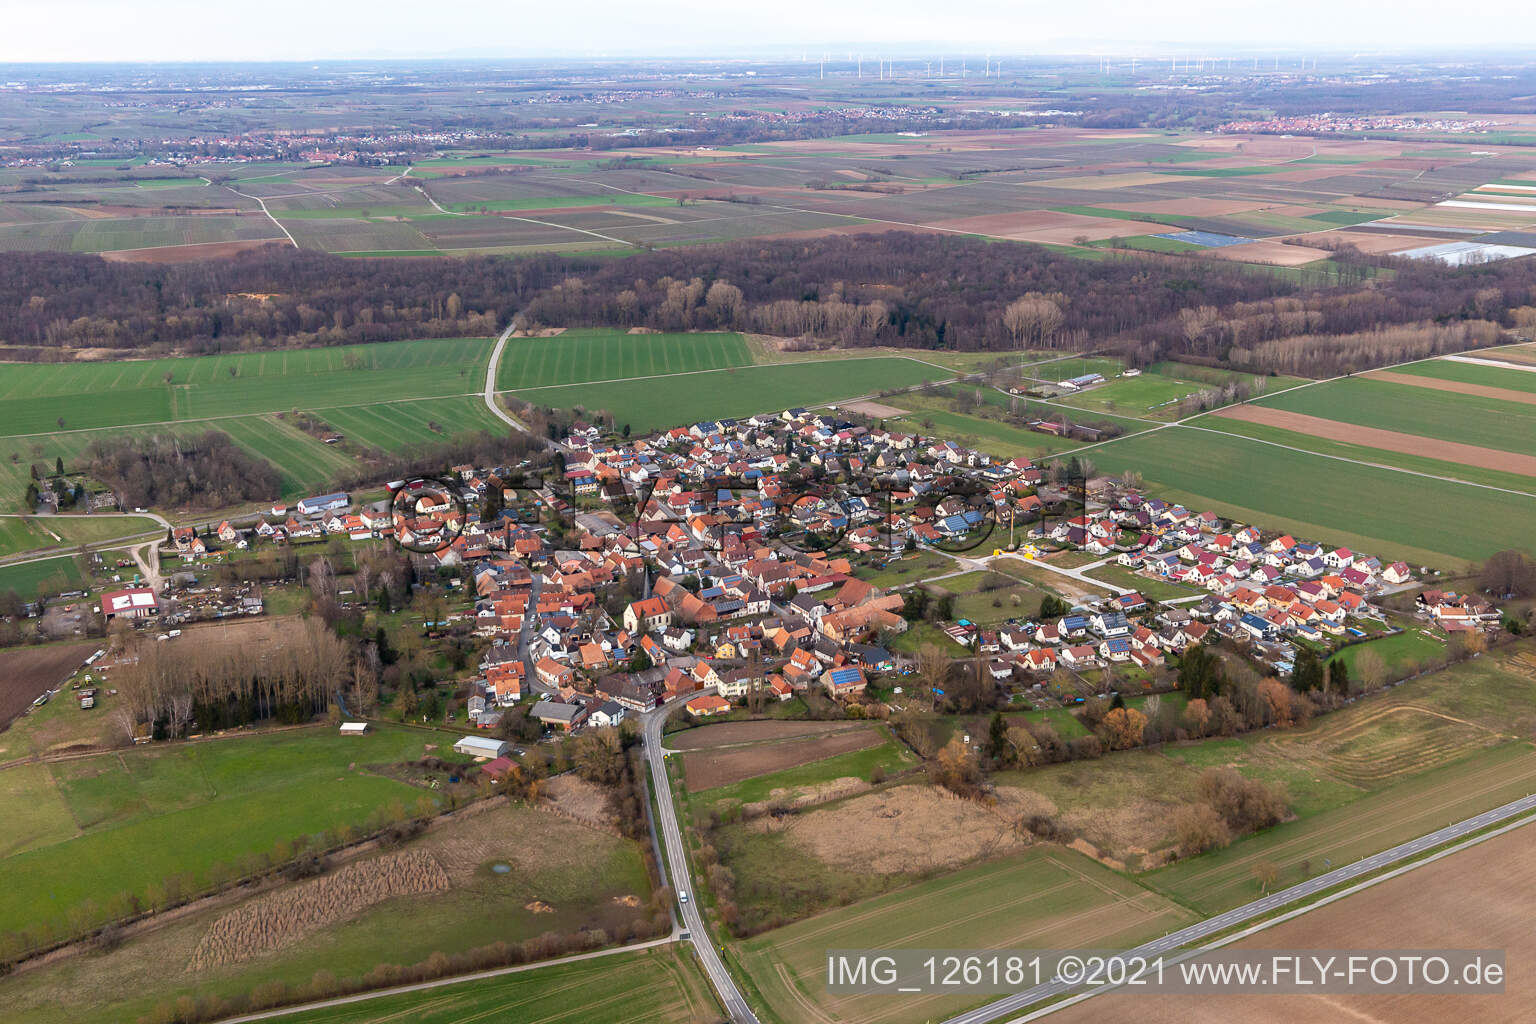 Barbelroth dans le département Rhénanie-Palatinat, Allemagne vue d'en haut